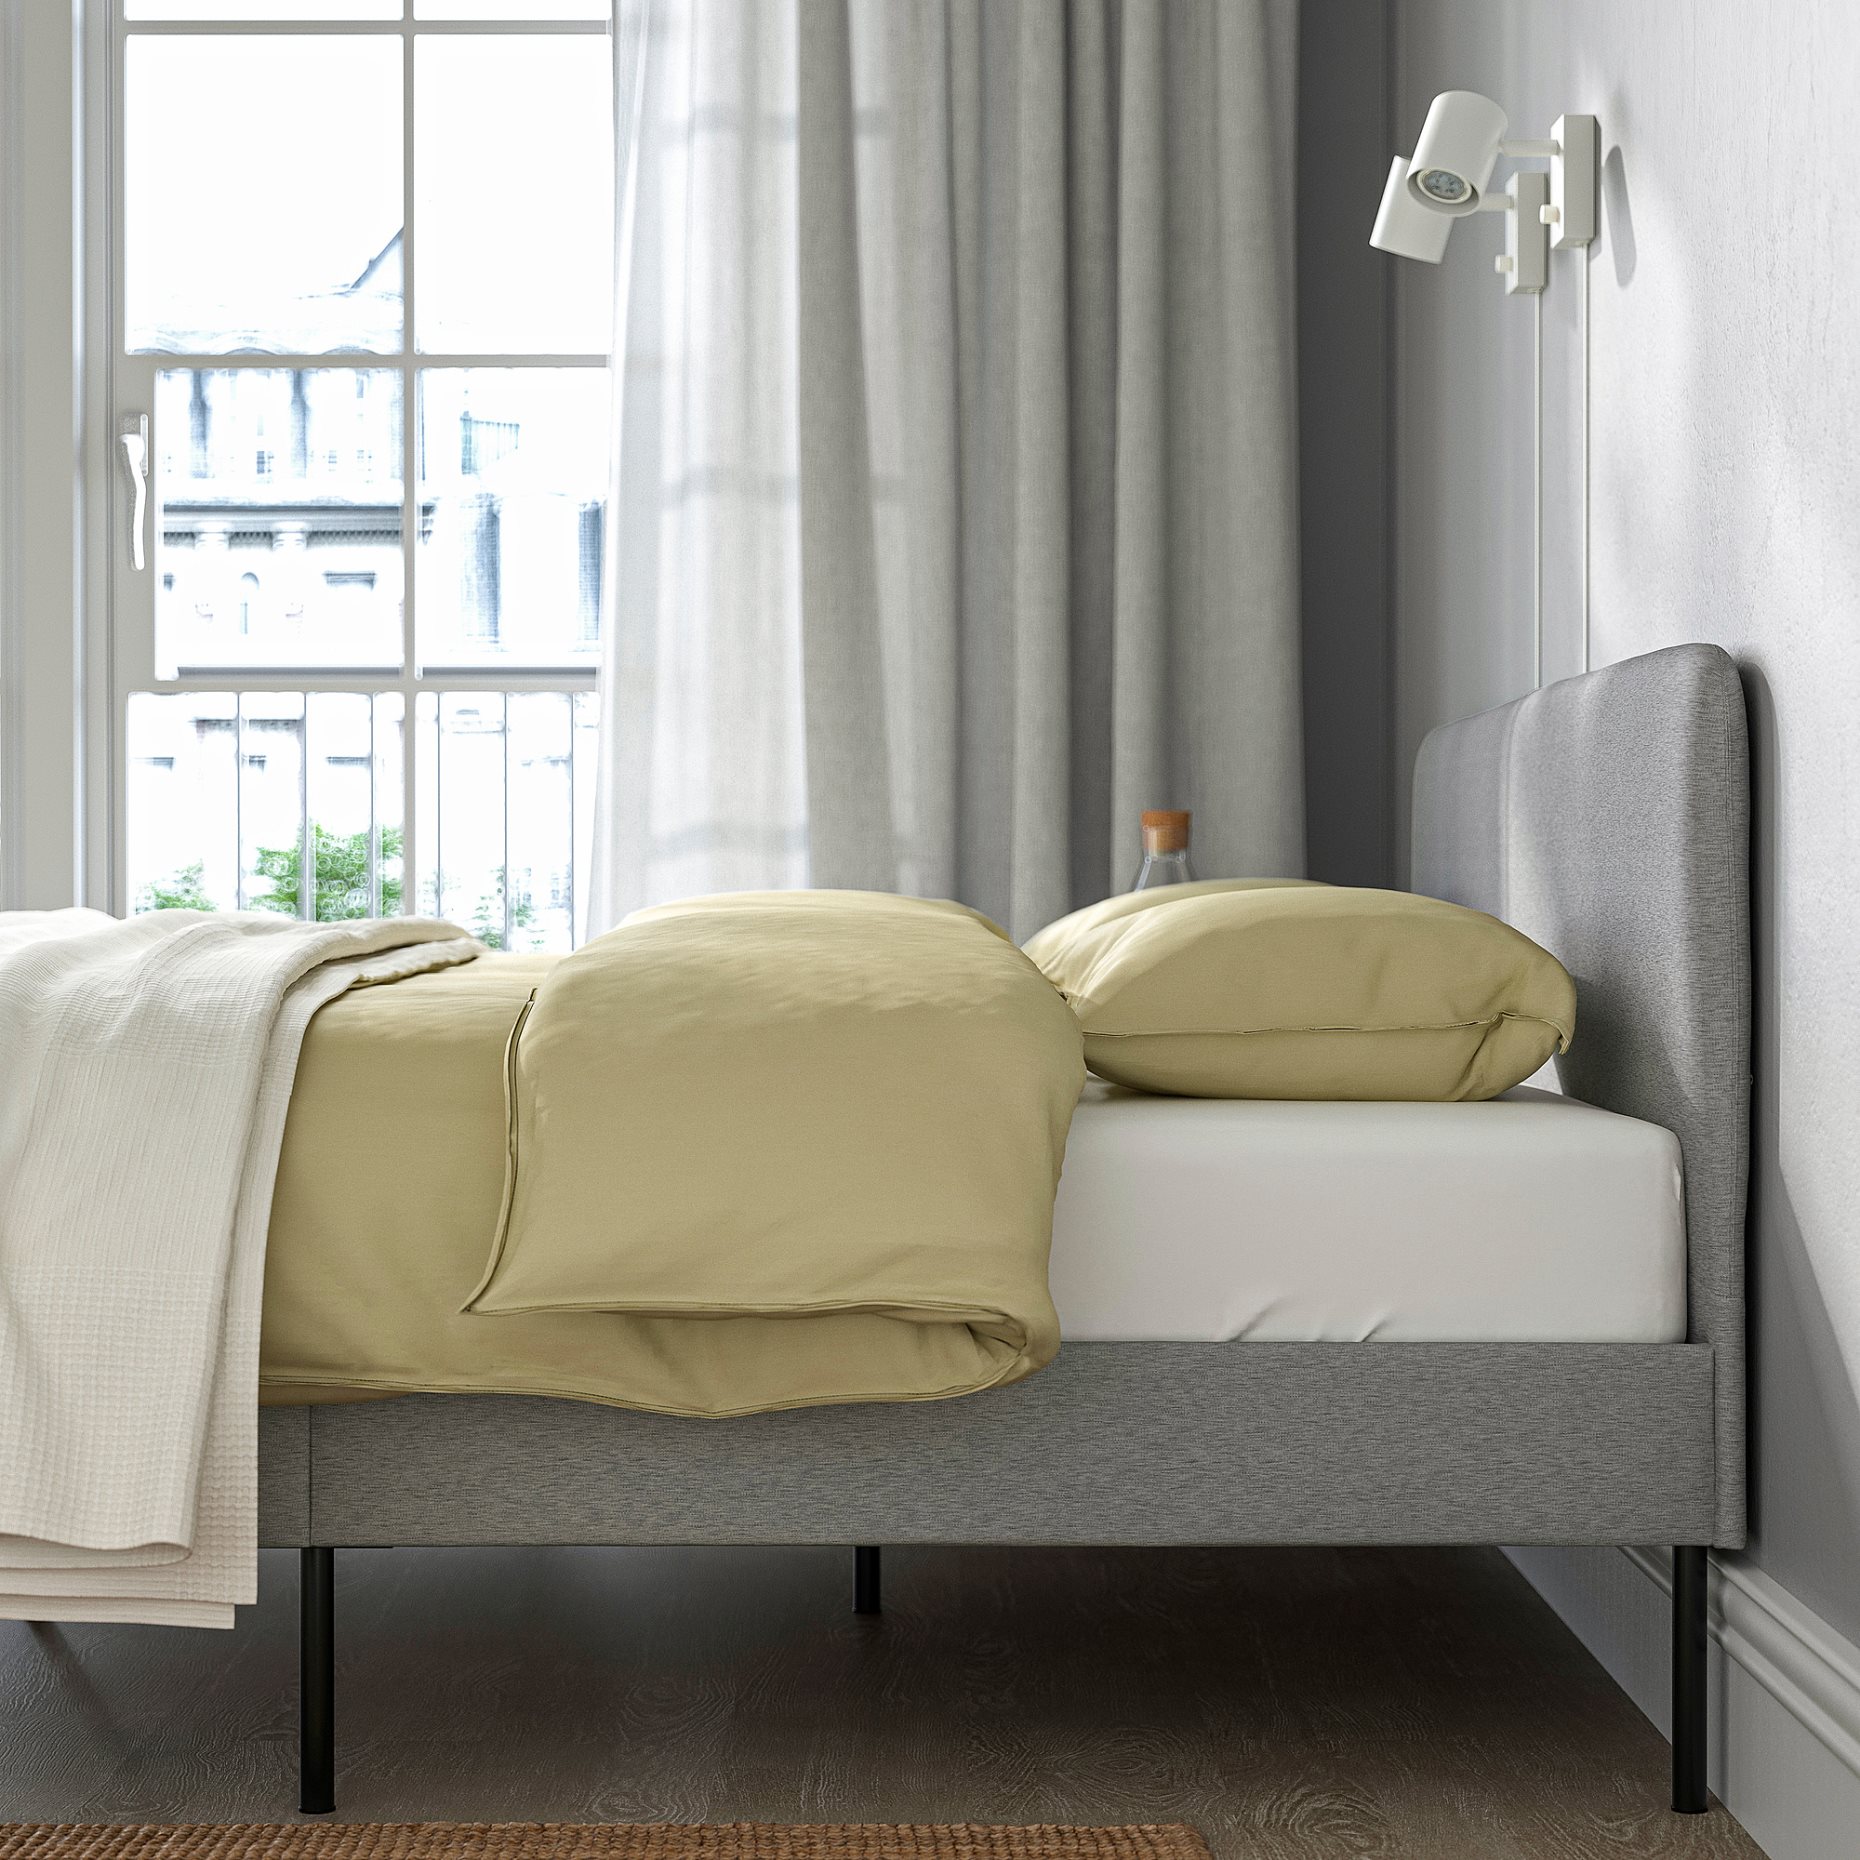 SLATTUM, upholstered bed, 160x200 cm, 604.463.76